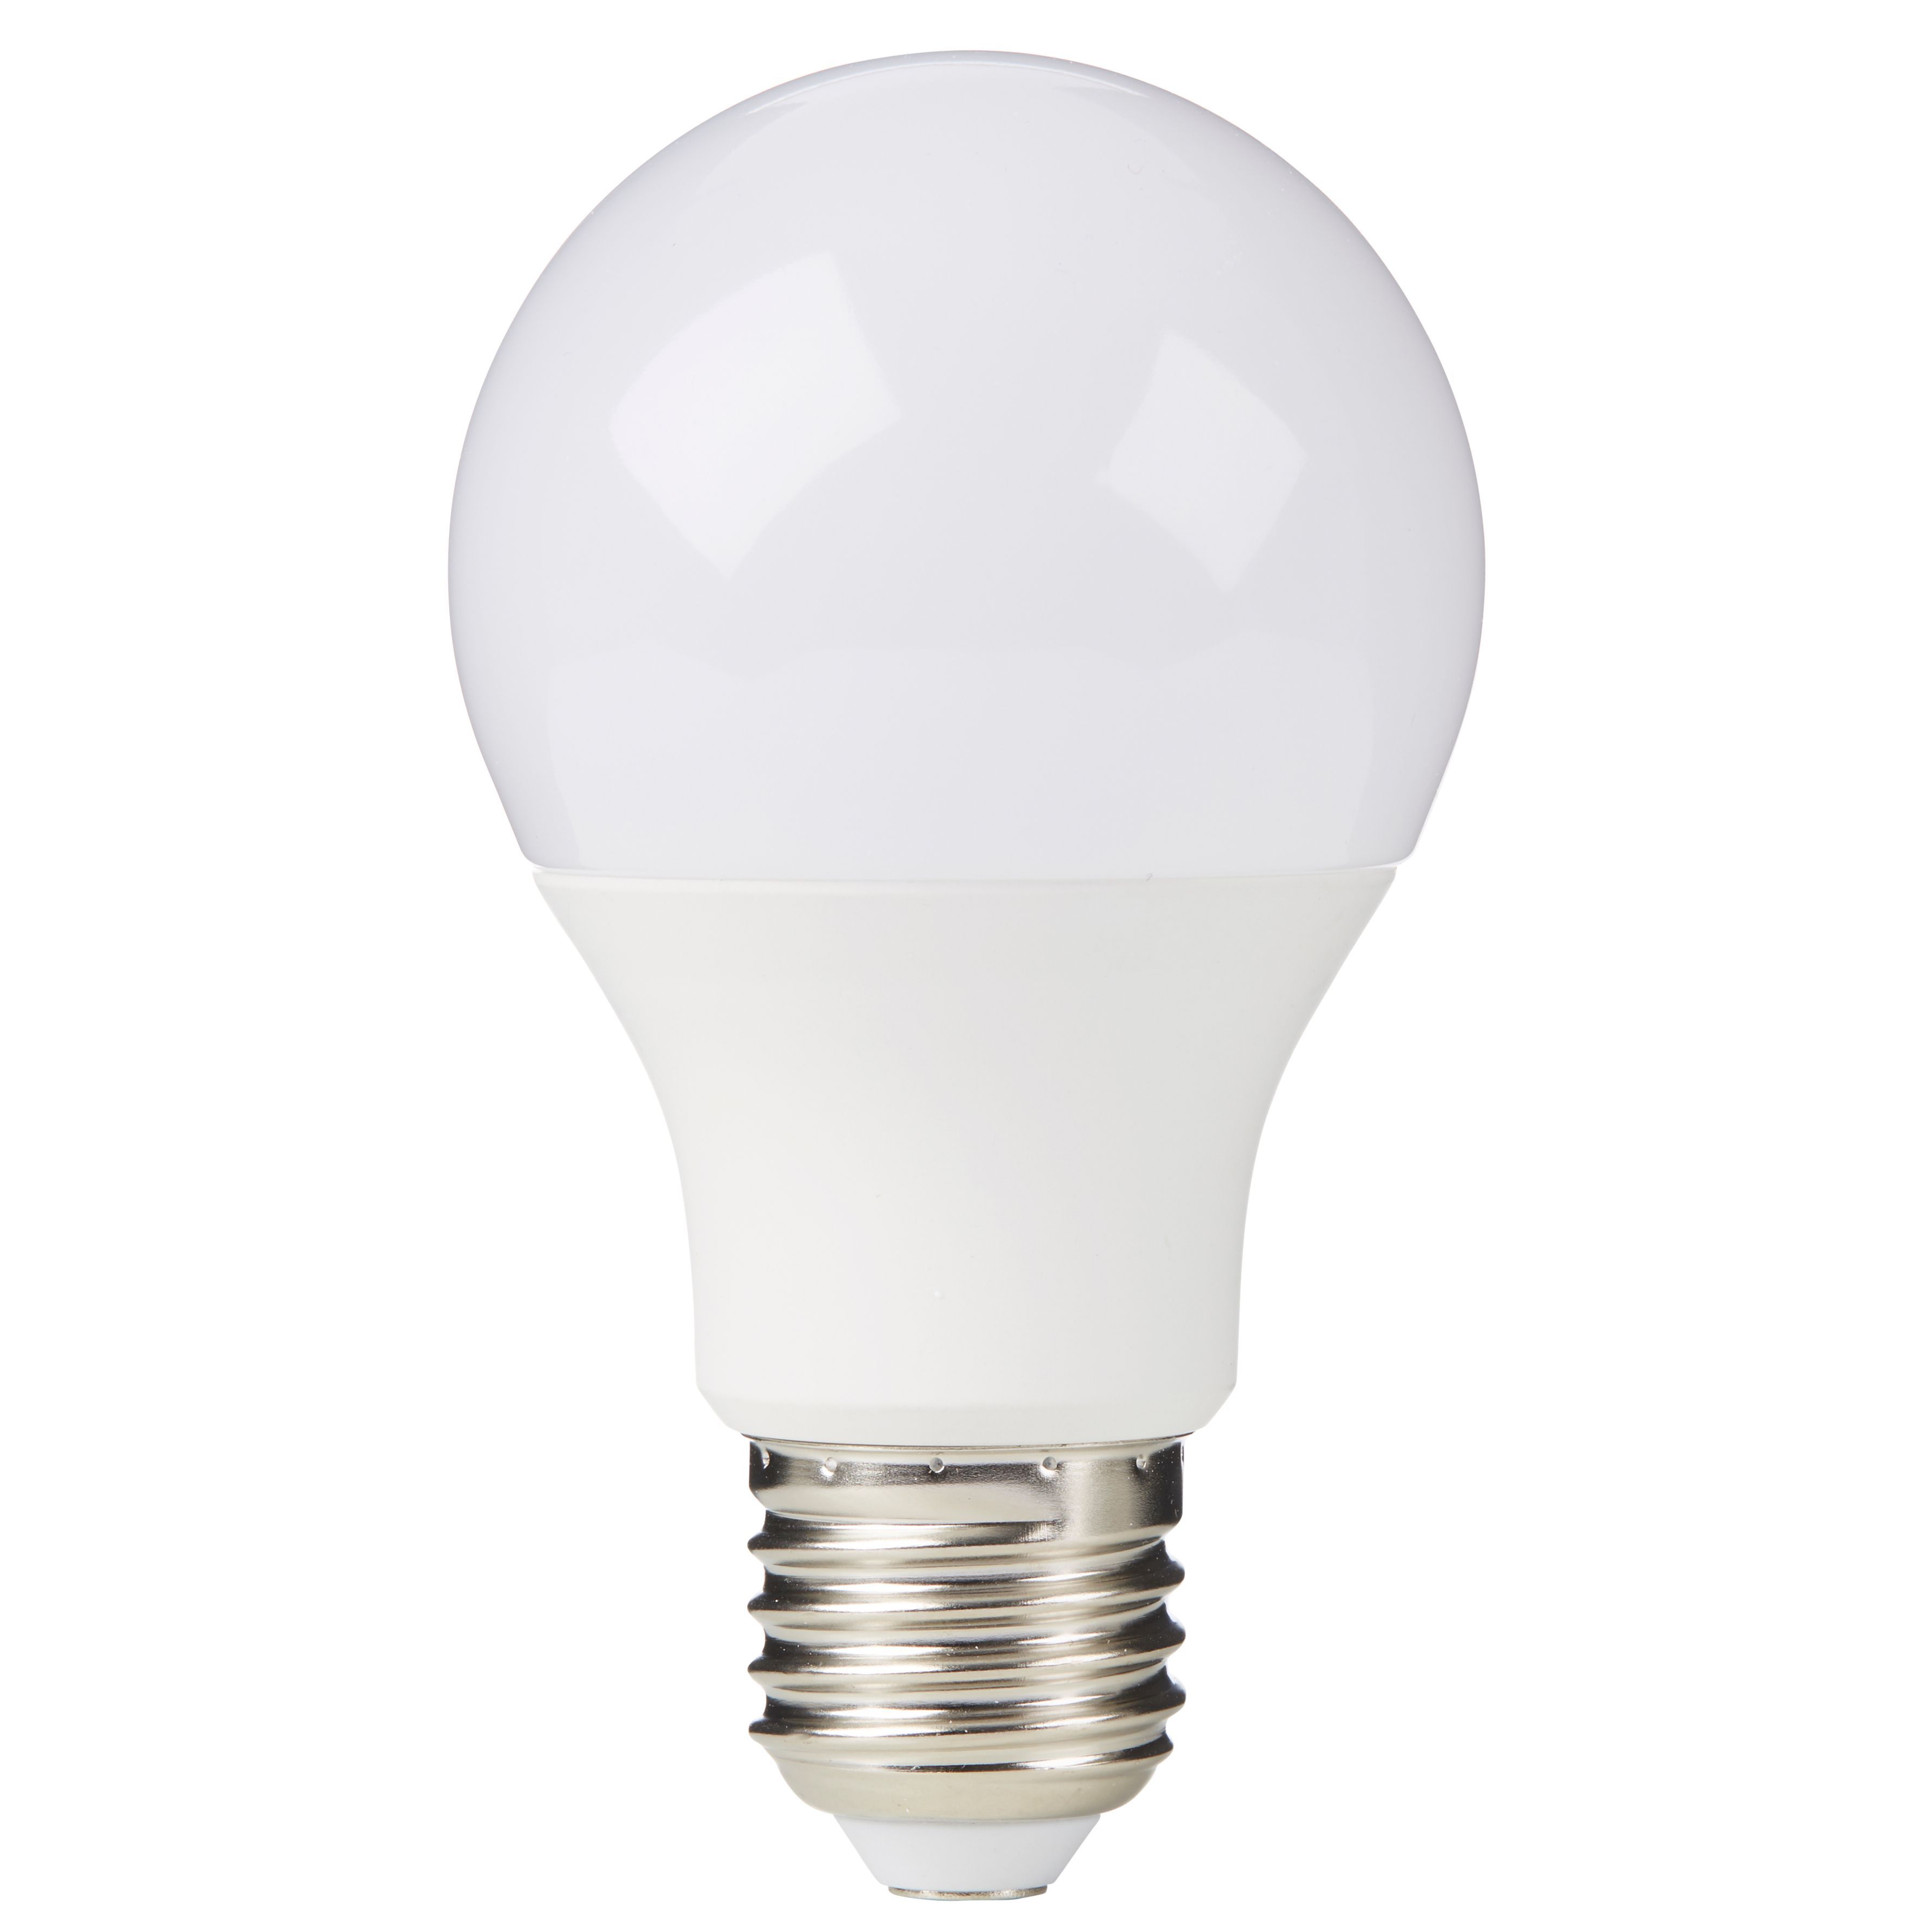 Diall E27 1060lm GLS Warm white LED Light bulb, Pack of 3